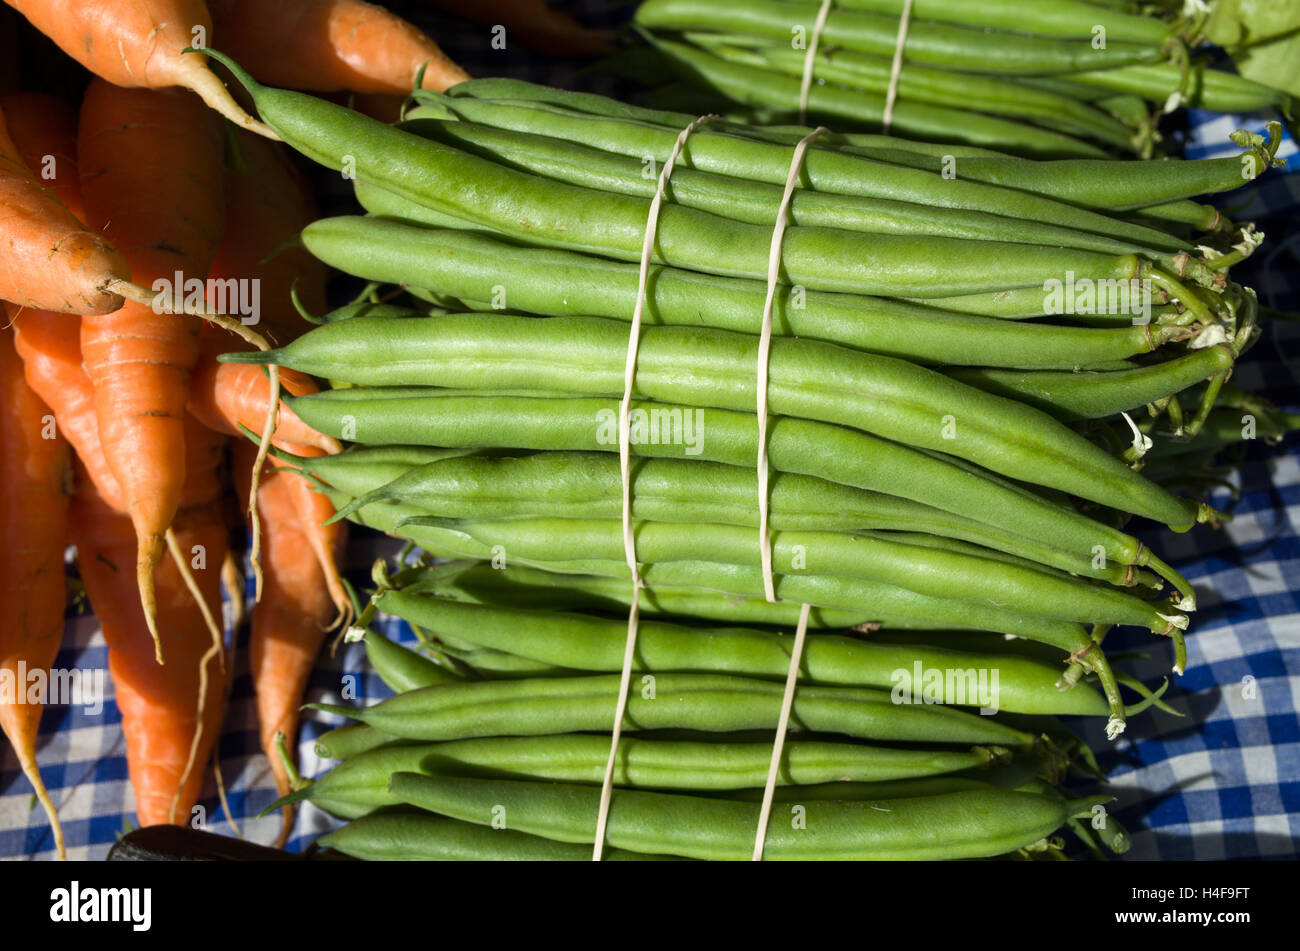 Les haricots verts sur le farmers market stall, England, UK Banque D'Images